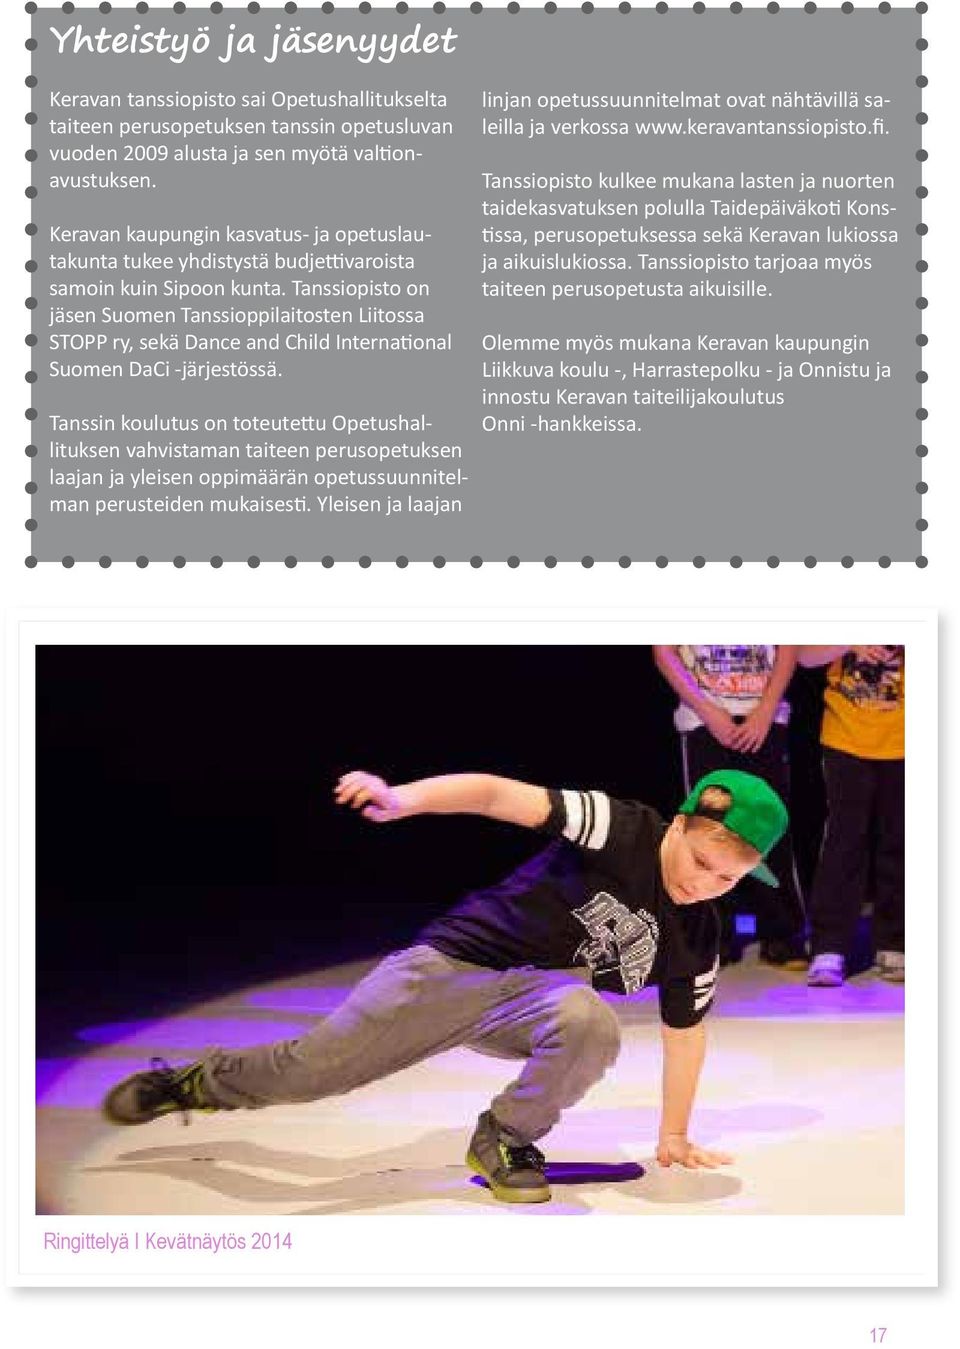 Tanssiopisto on jäsen Suomen Tanssioppilaitosten Liitossa STOPP ry, sekä Dance and Child International Suomen DaCi -järjestössä.